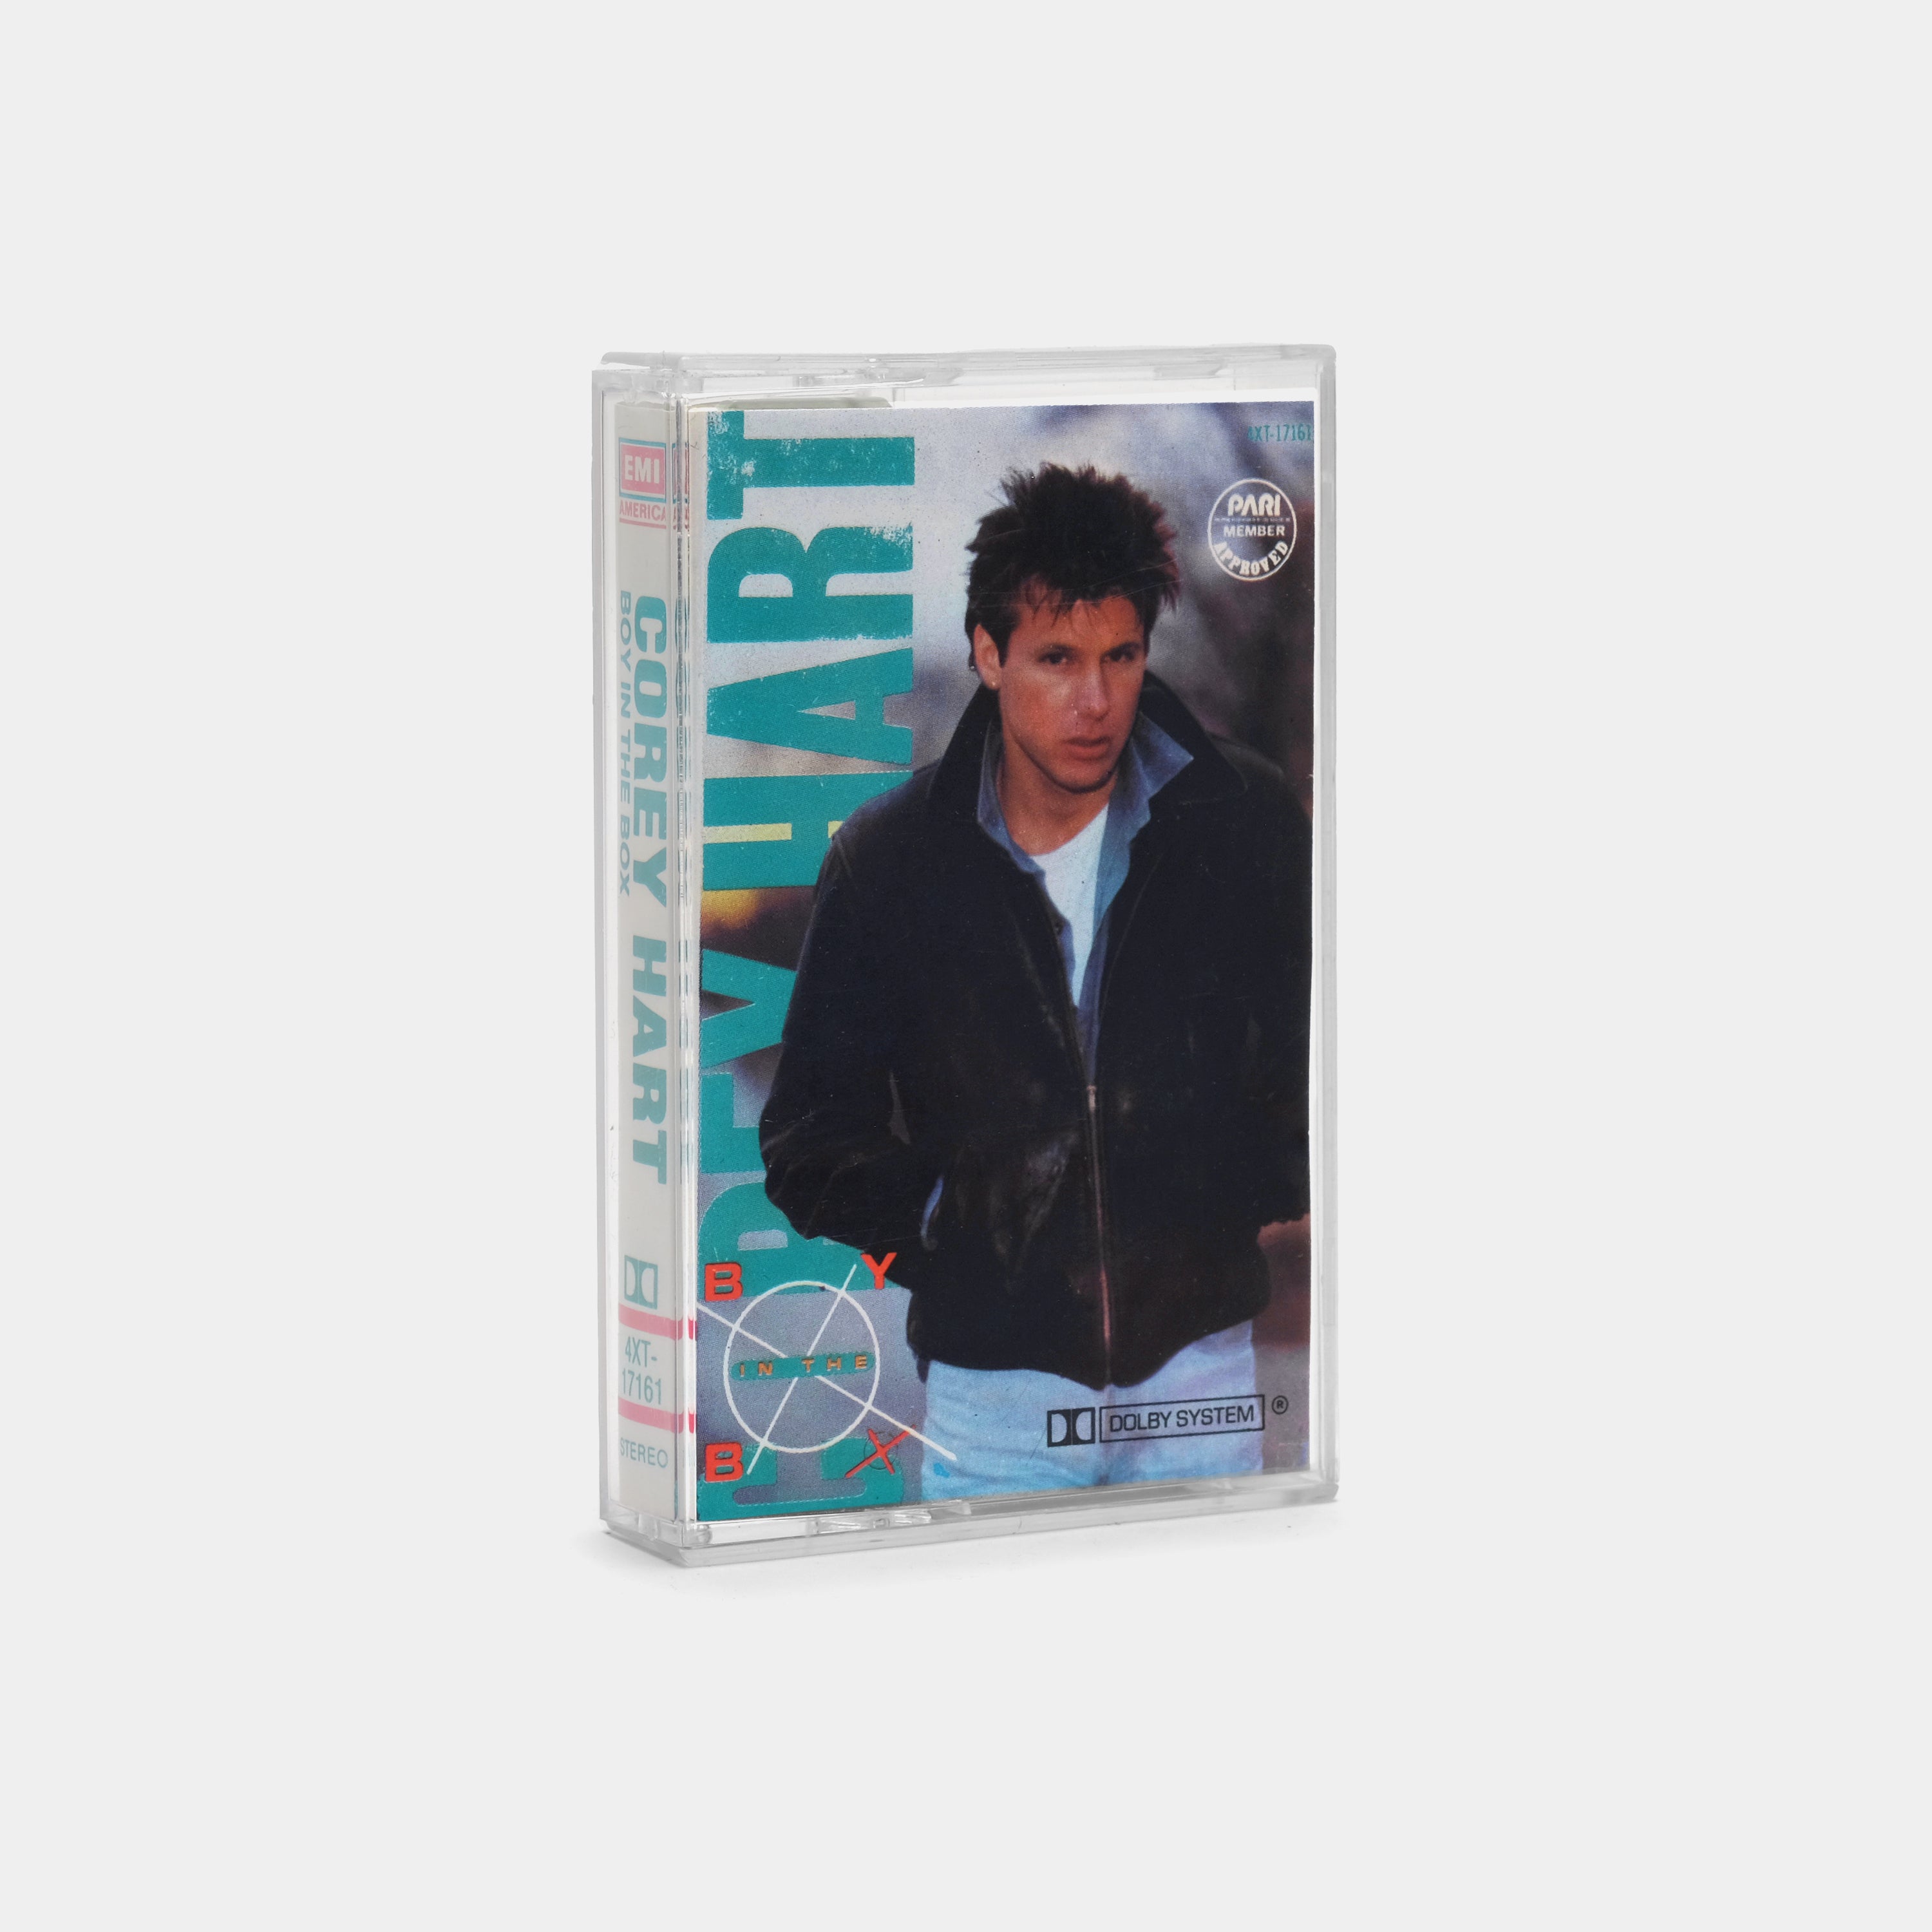 Corey Hart - Boy In The Box Cassette Tape